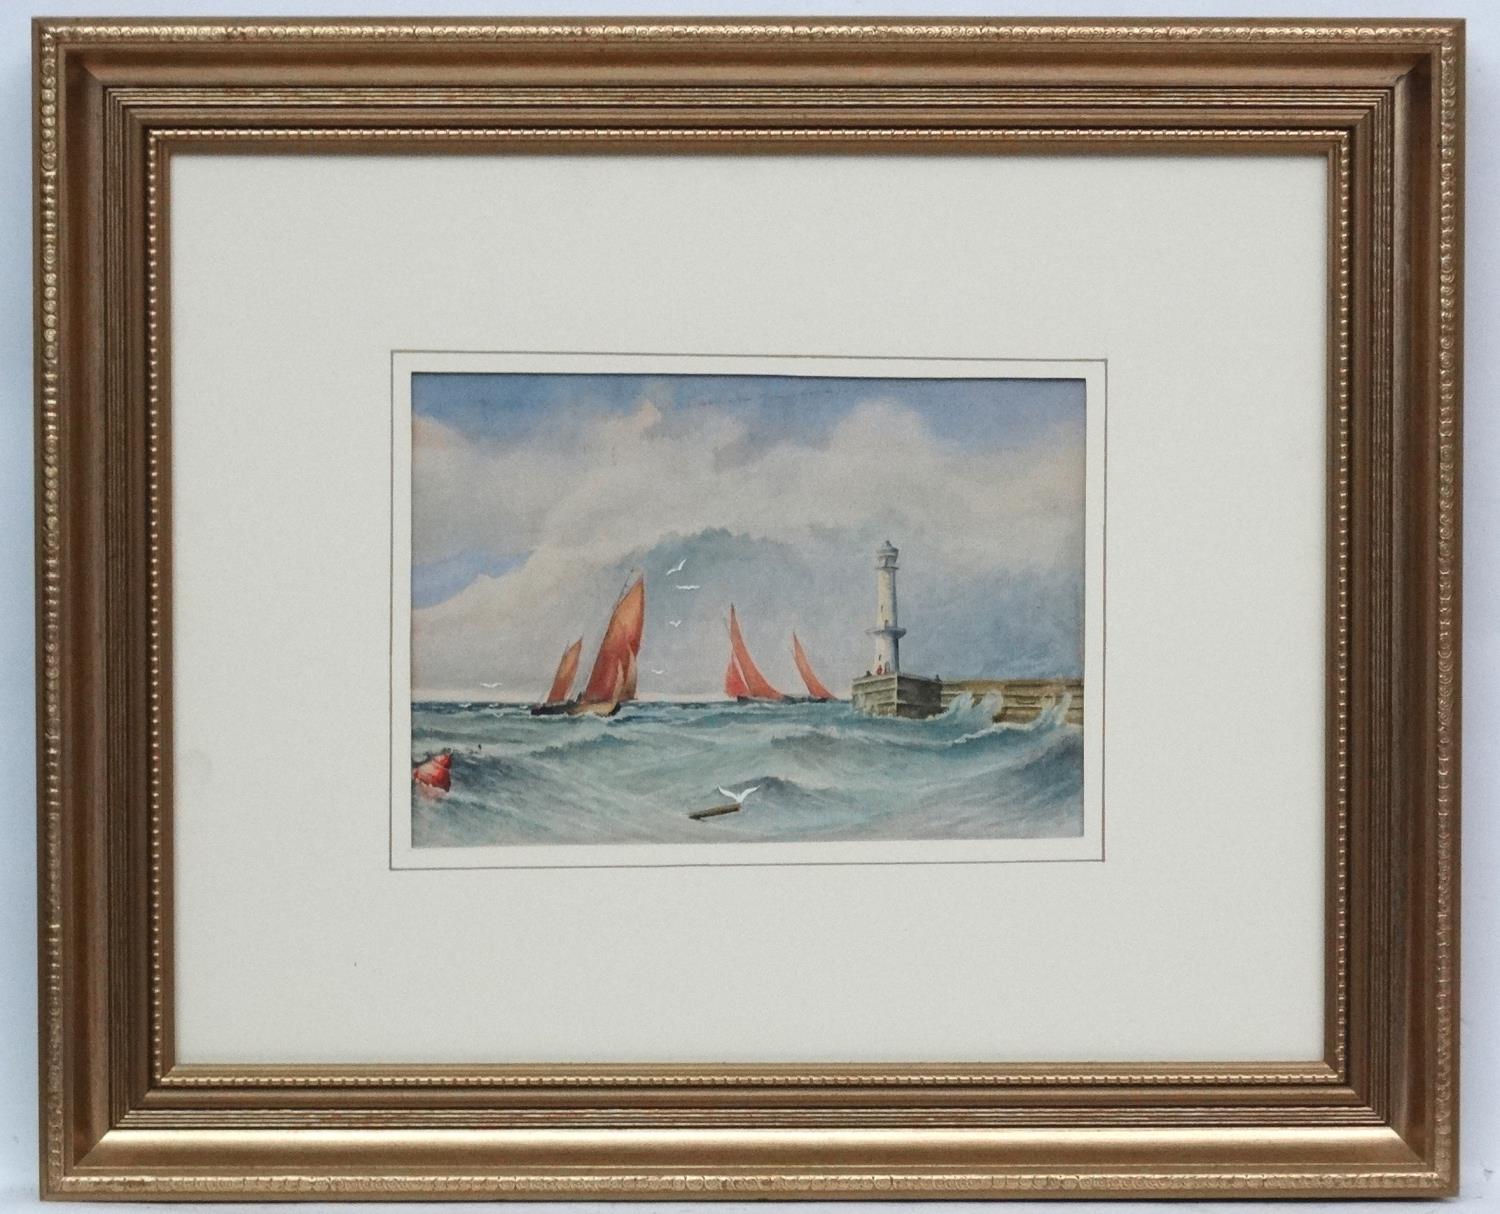 K Hoogendijk 1953 Marine School, Watercolour, Sailboats off a port near lighthouse, - Image 2 of 10